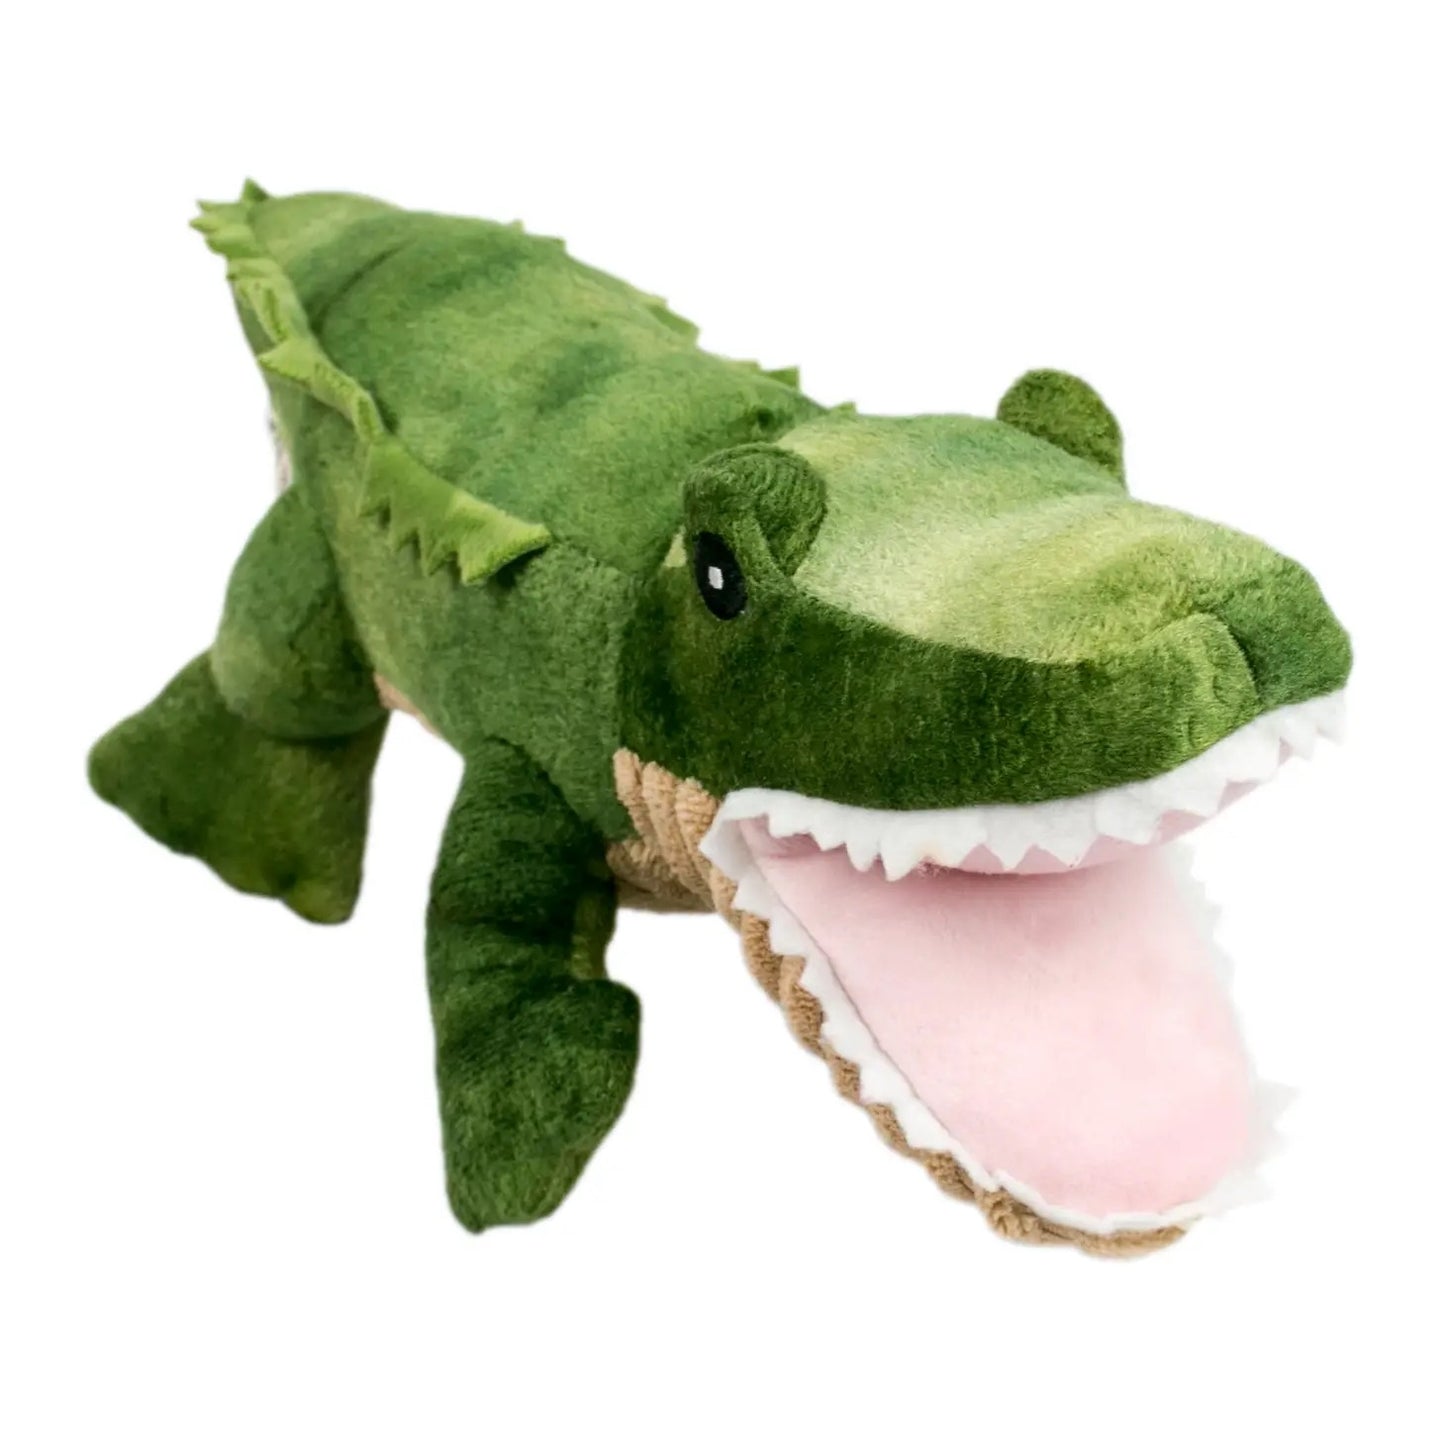 Gator Toy